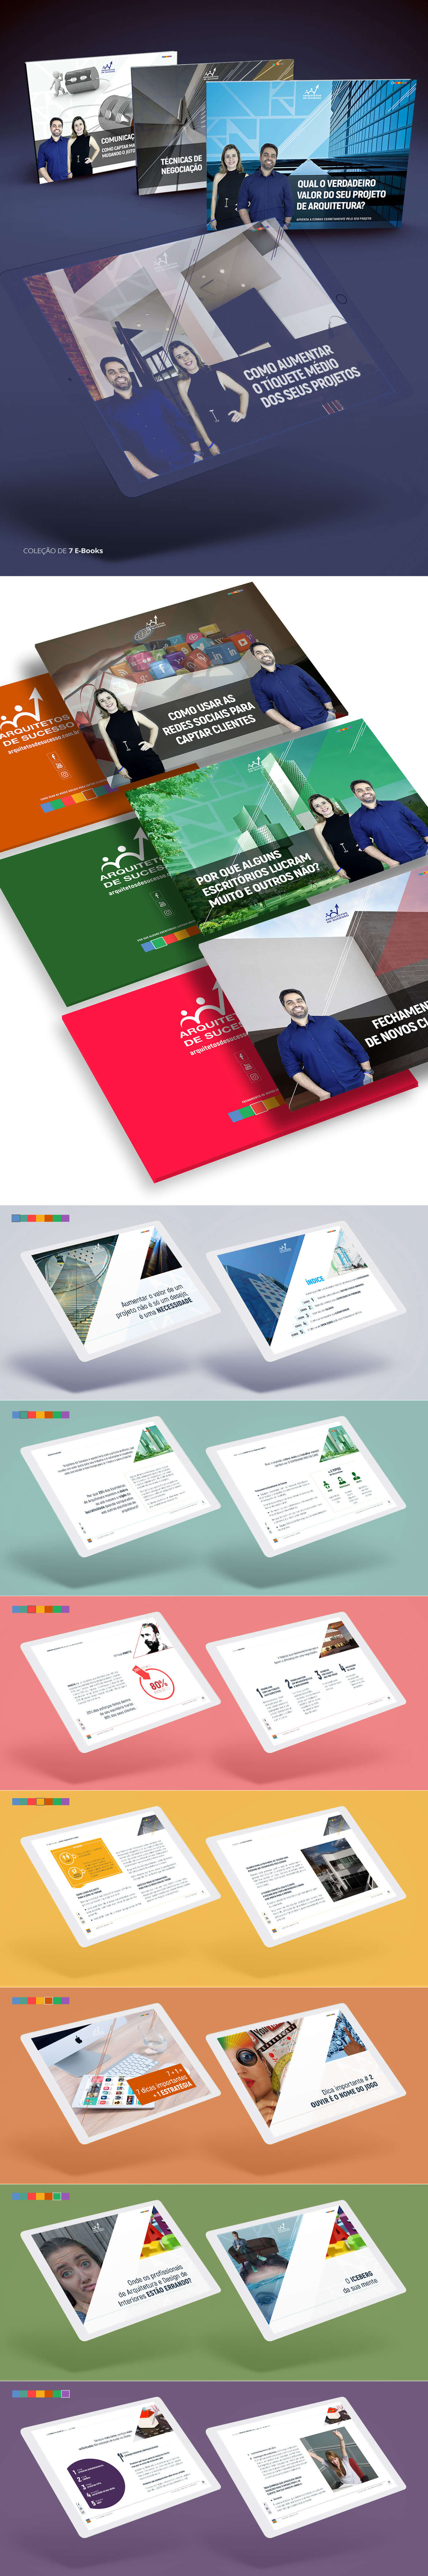 Imagem do processo criativo e conceito dos 6 E-books criados para o cliente Arquitetos de Sucesso